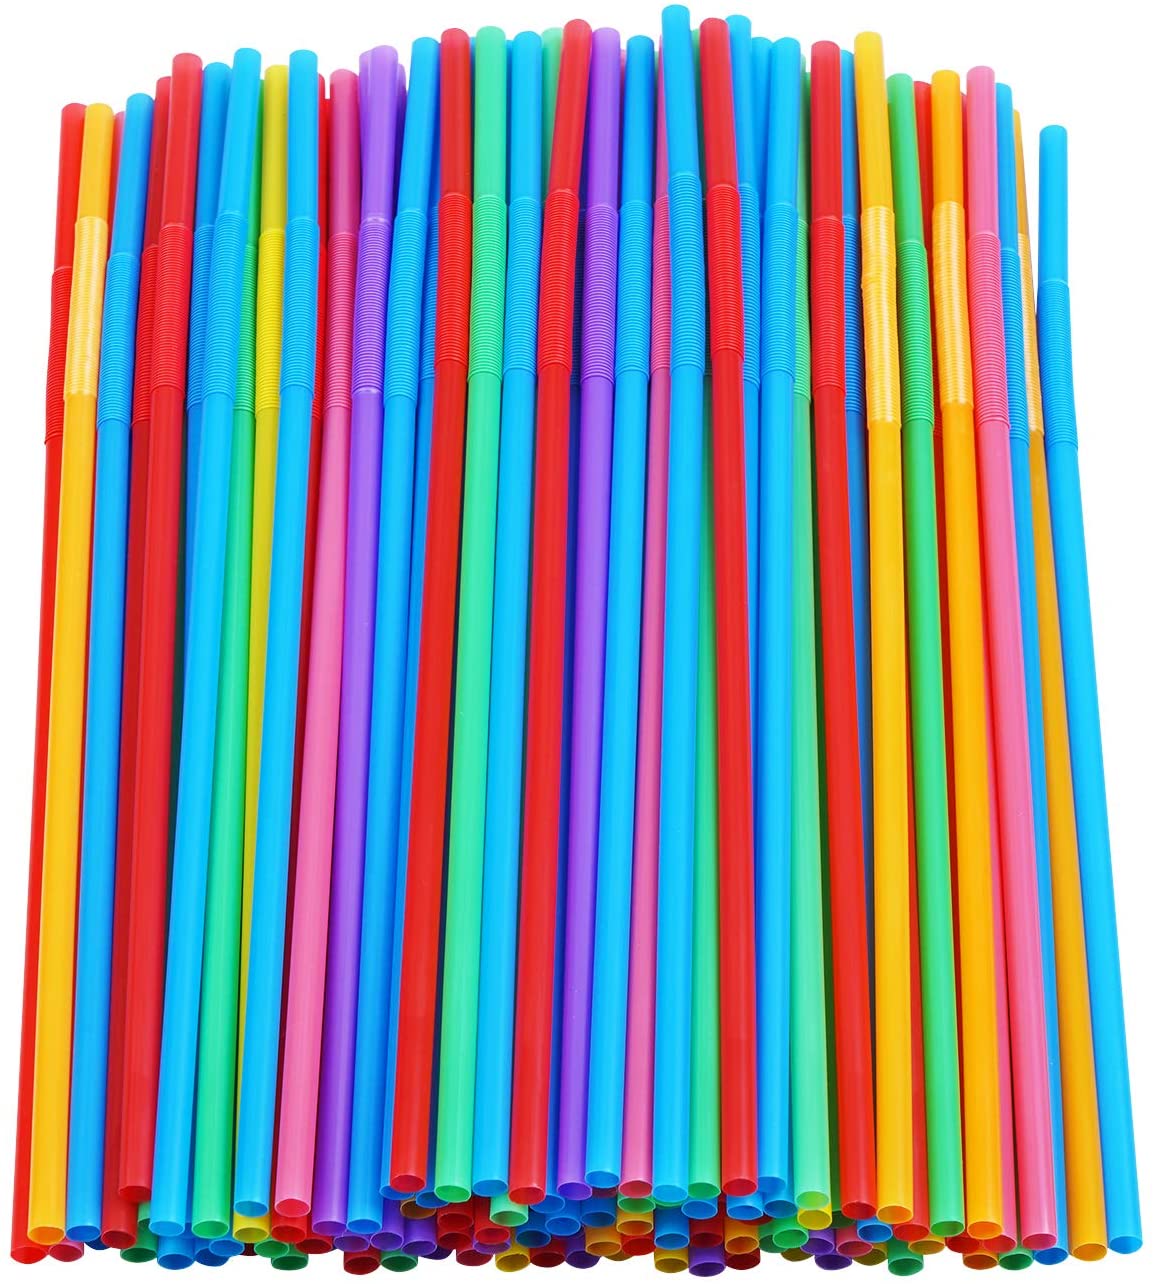 CVNDKN Flexible Plastic Multi-Color Straws, 200-Count